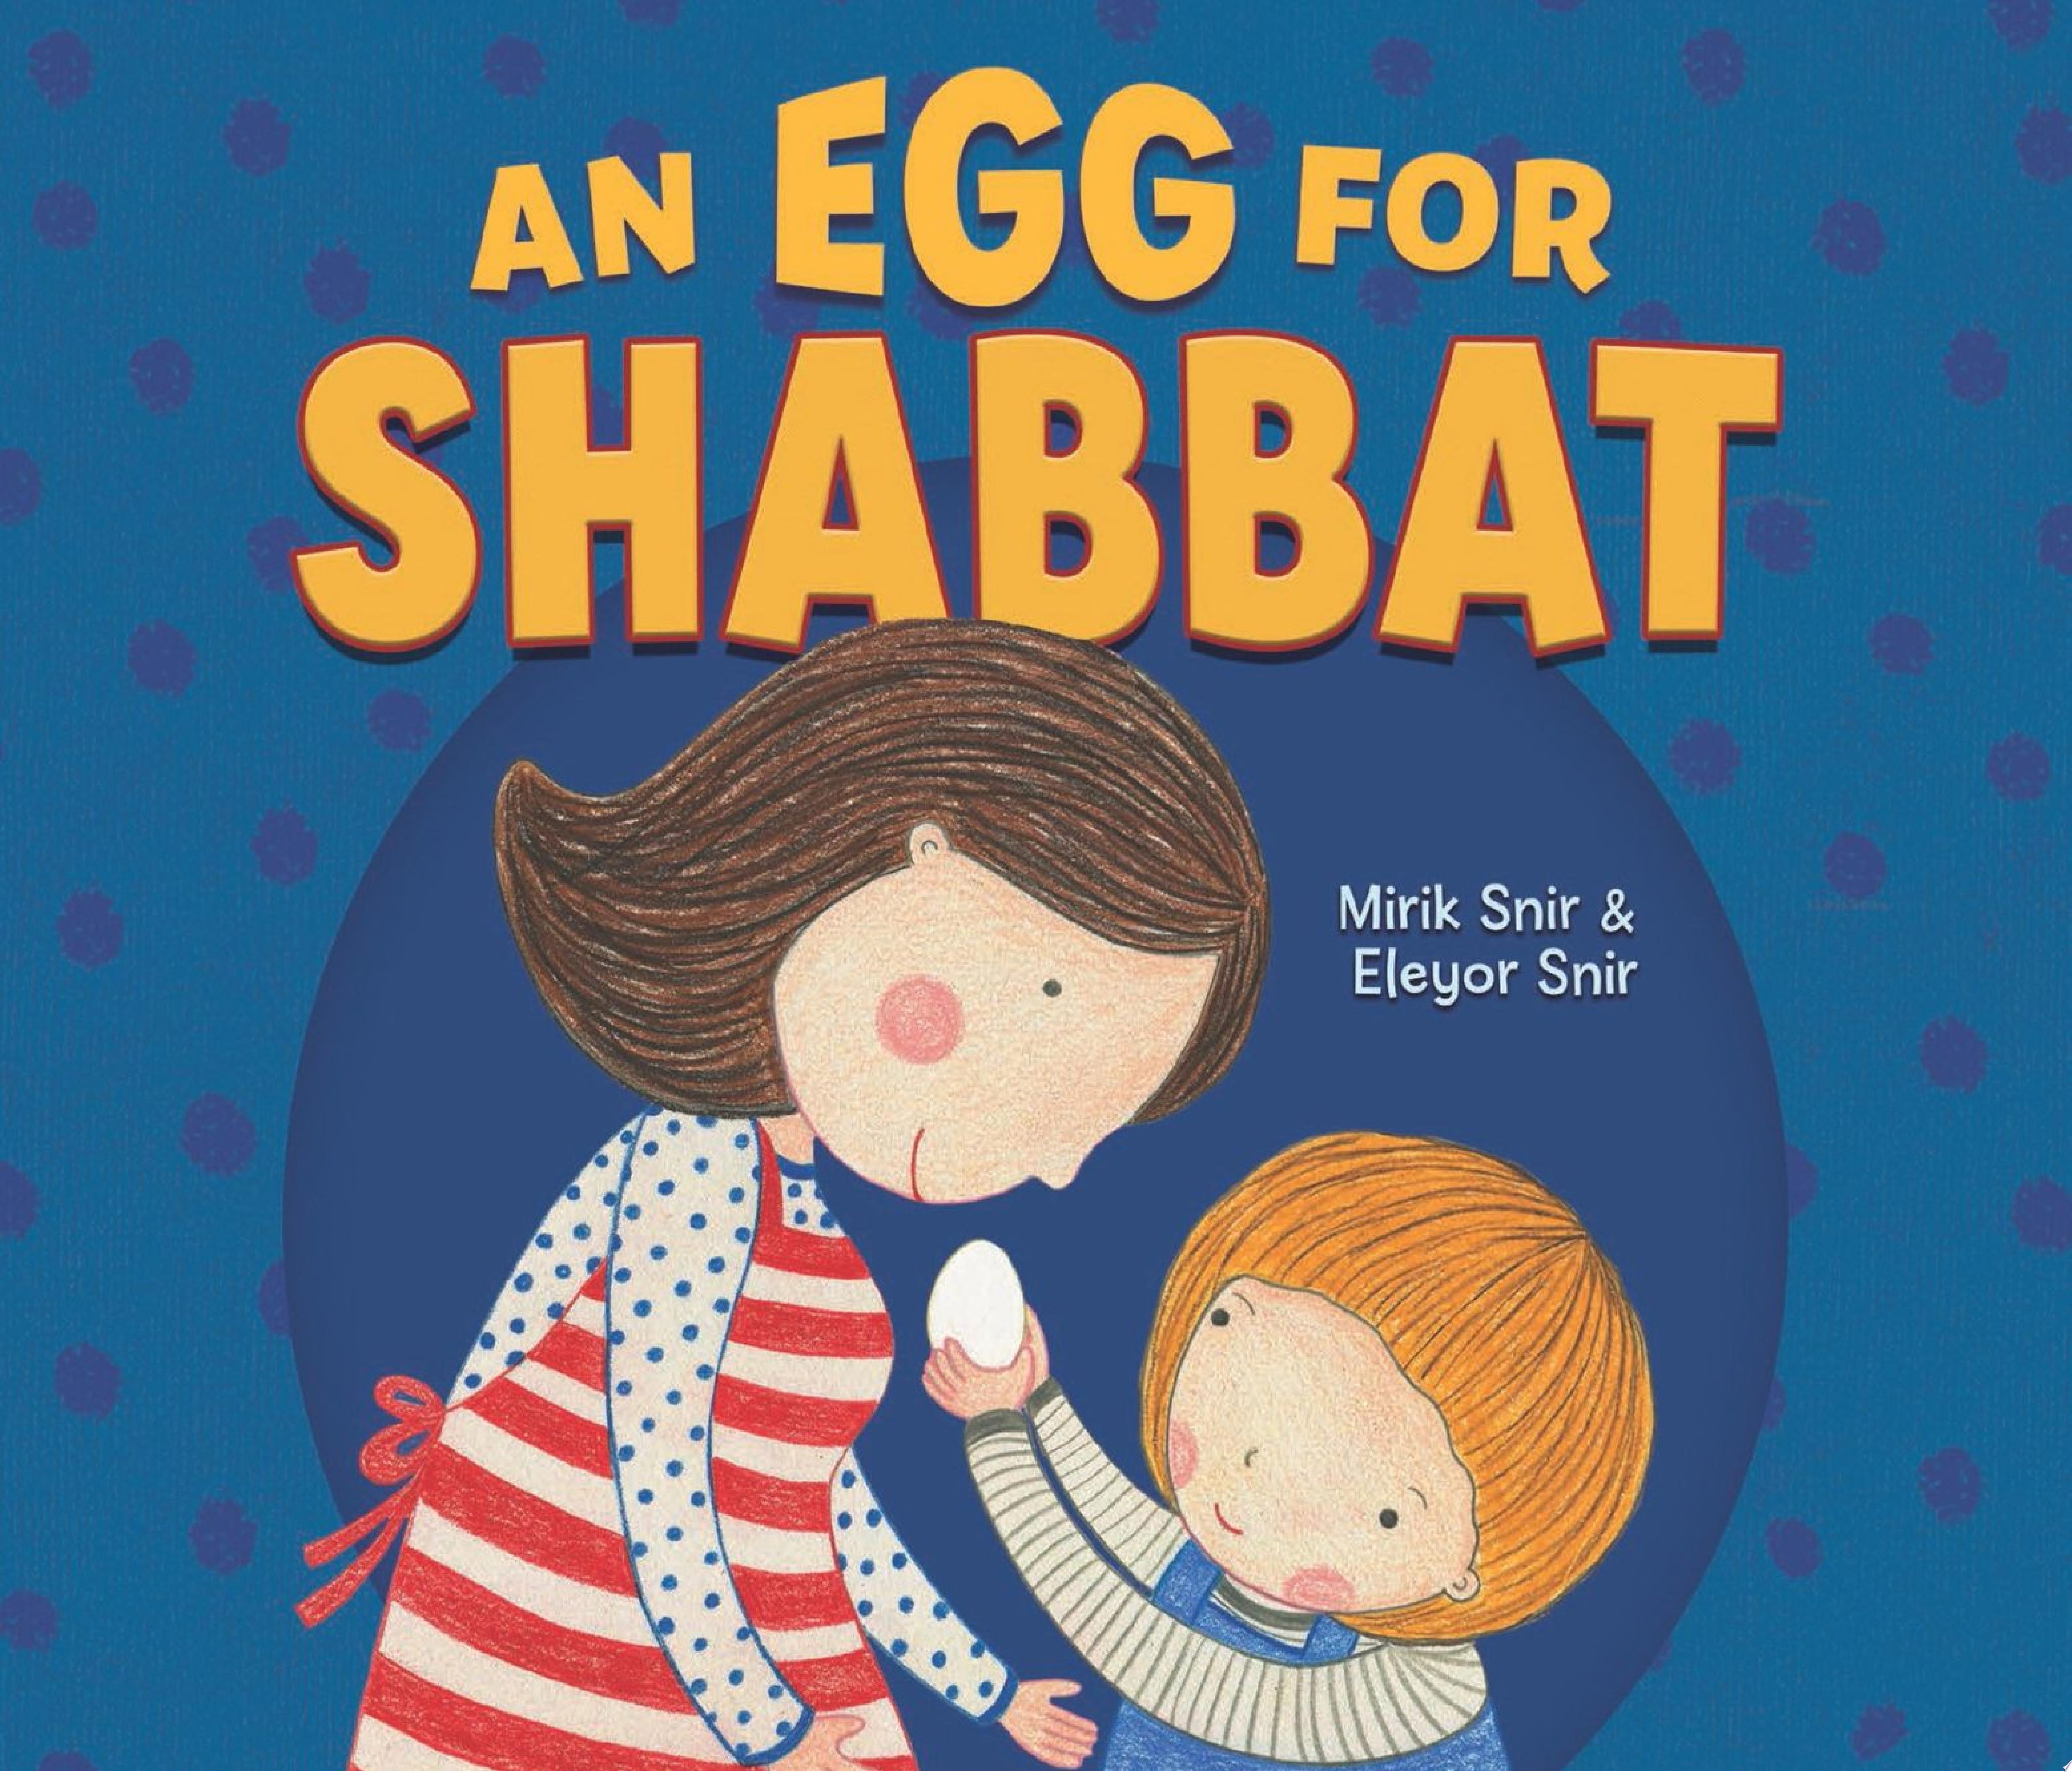 Image for "An Egg for Shabbat"